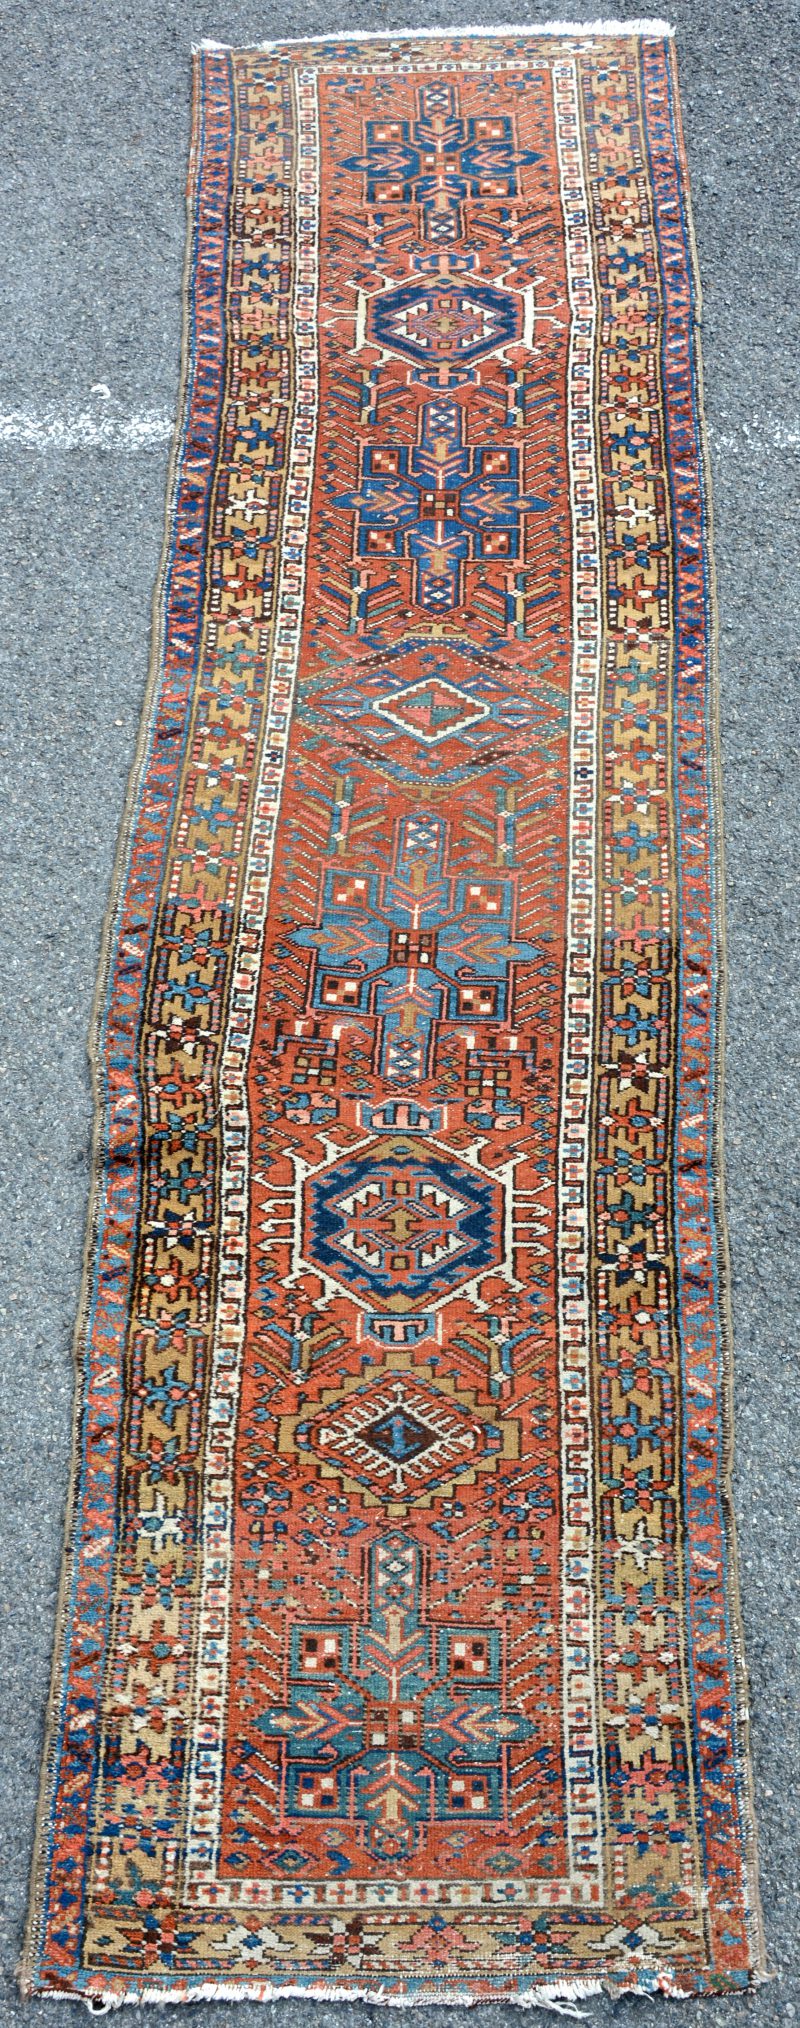 Oude handgeknoopte wollen loper met geometrisch motief van veelhoeken en gestileerde bloemen. Perzisch werk.